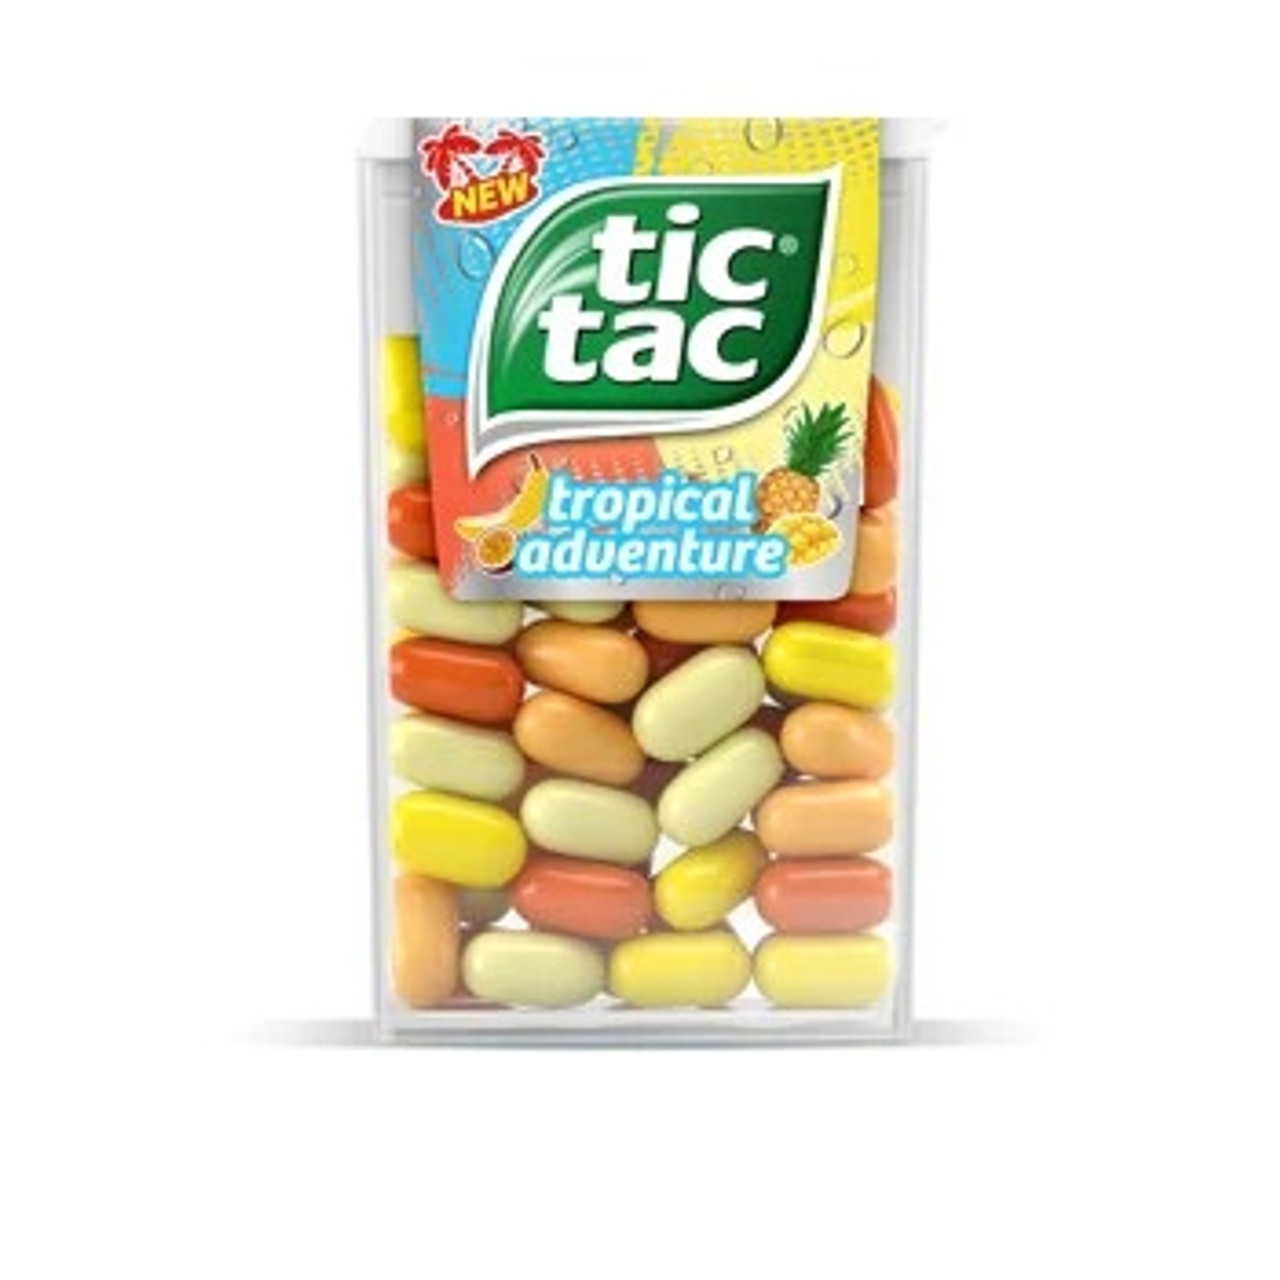 Tic Tac debuts Tropical Adventure flavor